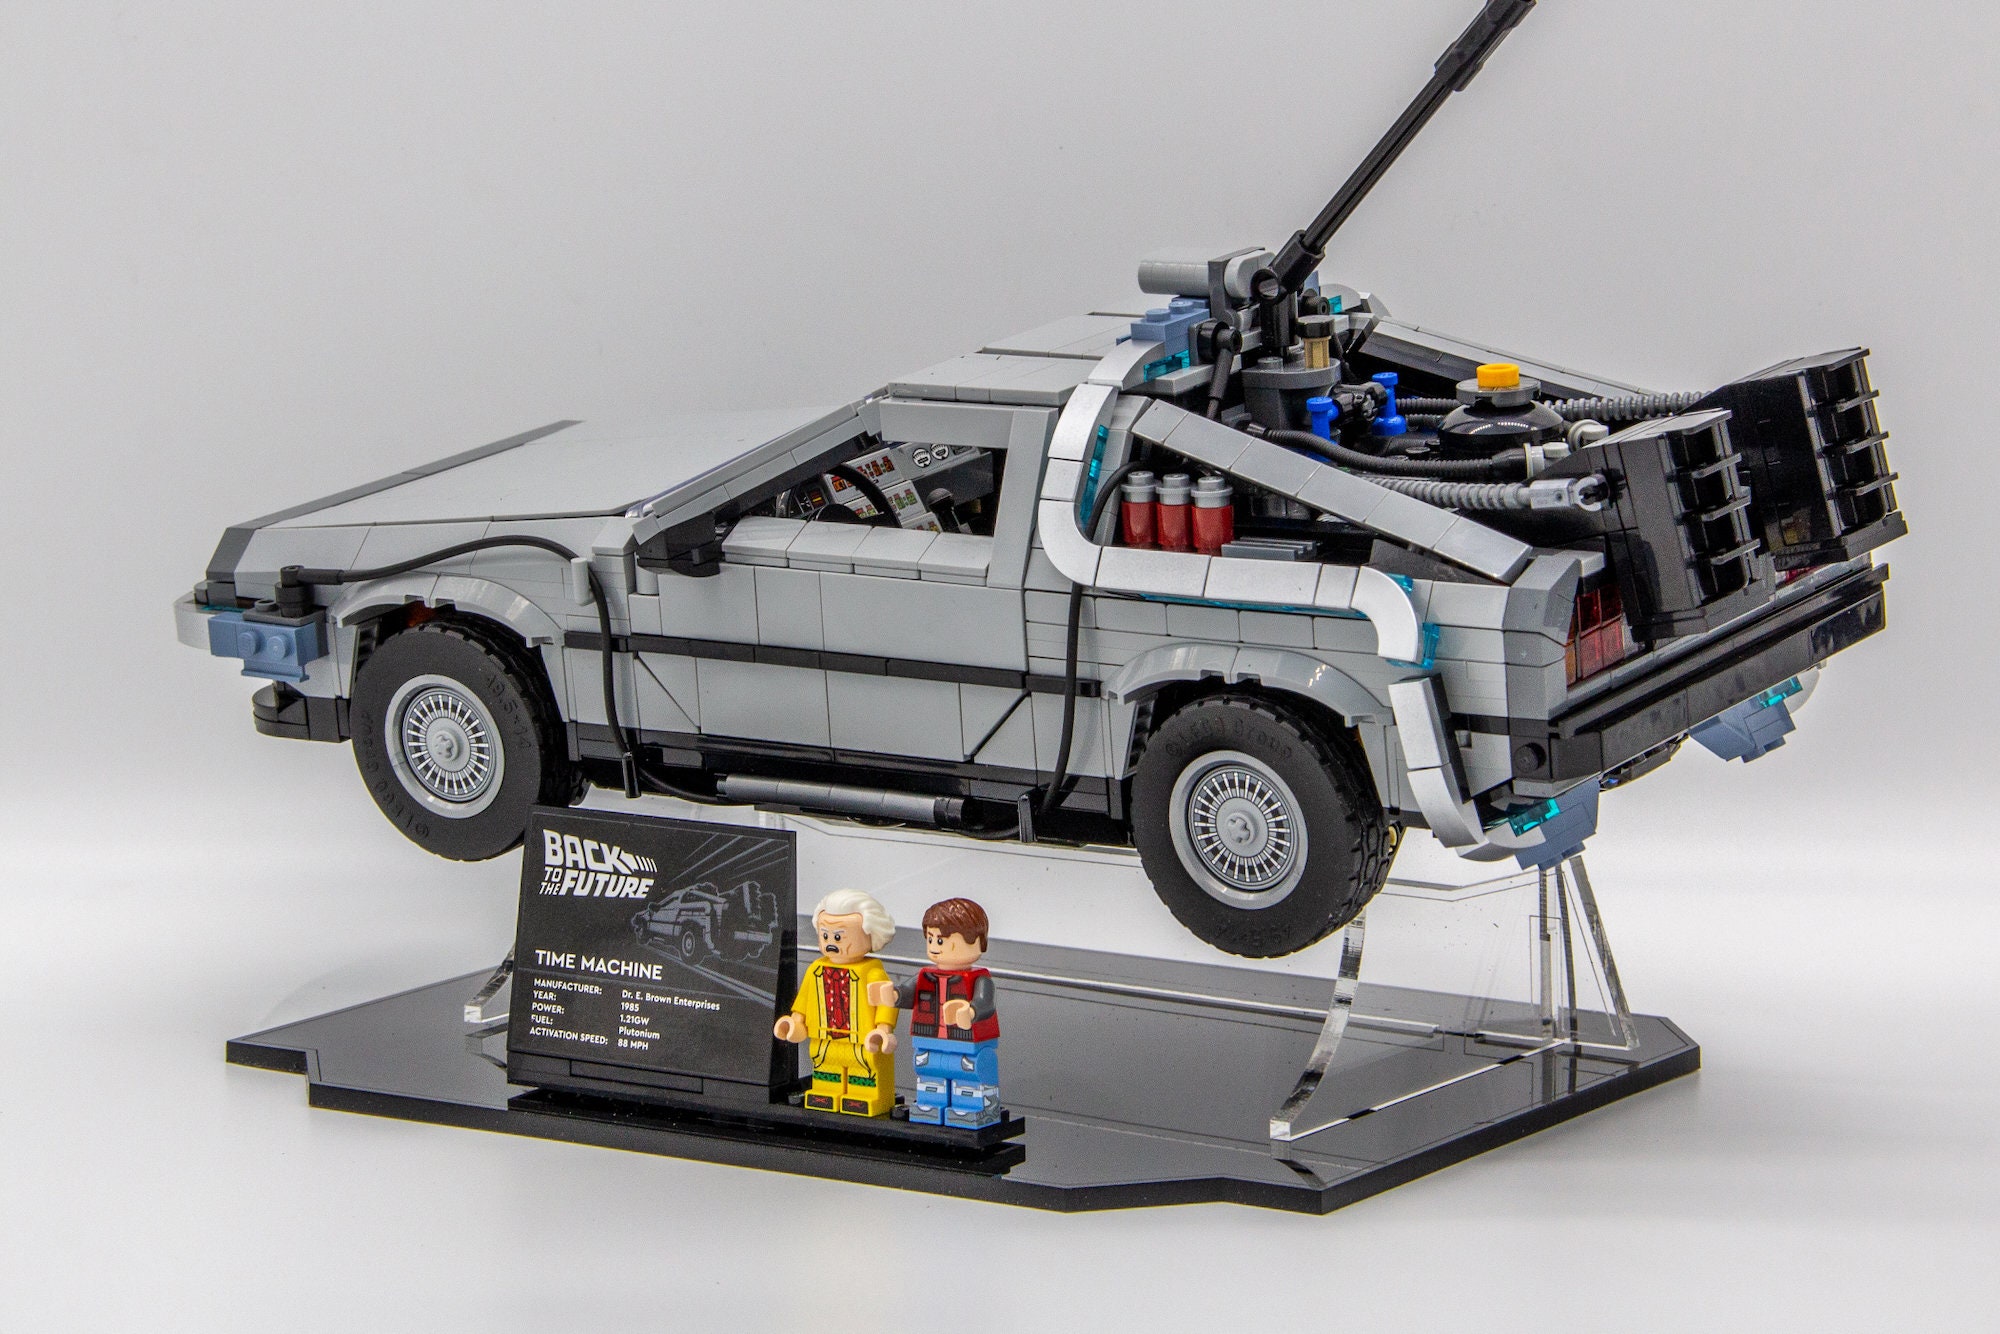 Acryl Vitrinen für Deine Lego Modelle-Lego 10300 Acrylständer für Delorean  - Die Zeitmaschine aus Zurück in die Zukunft